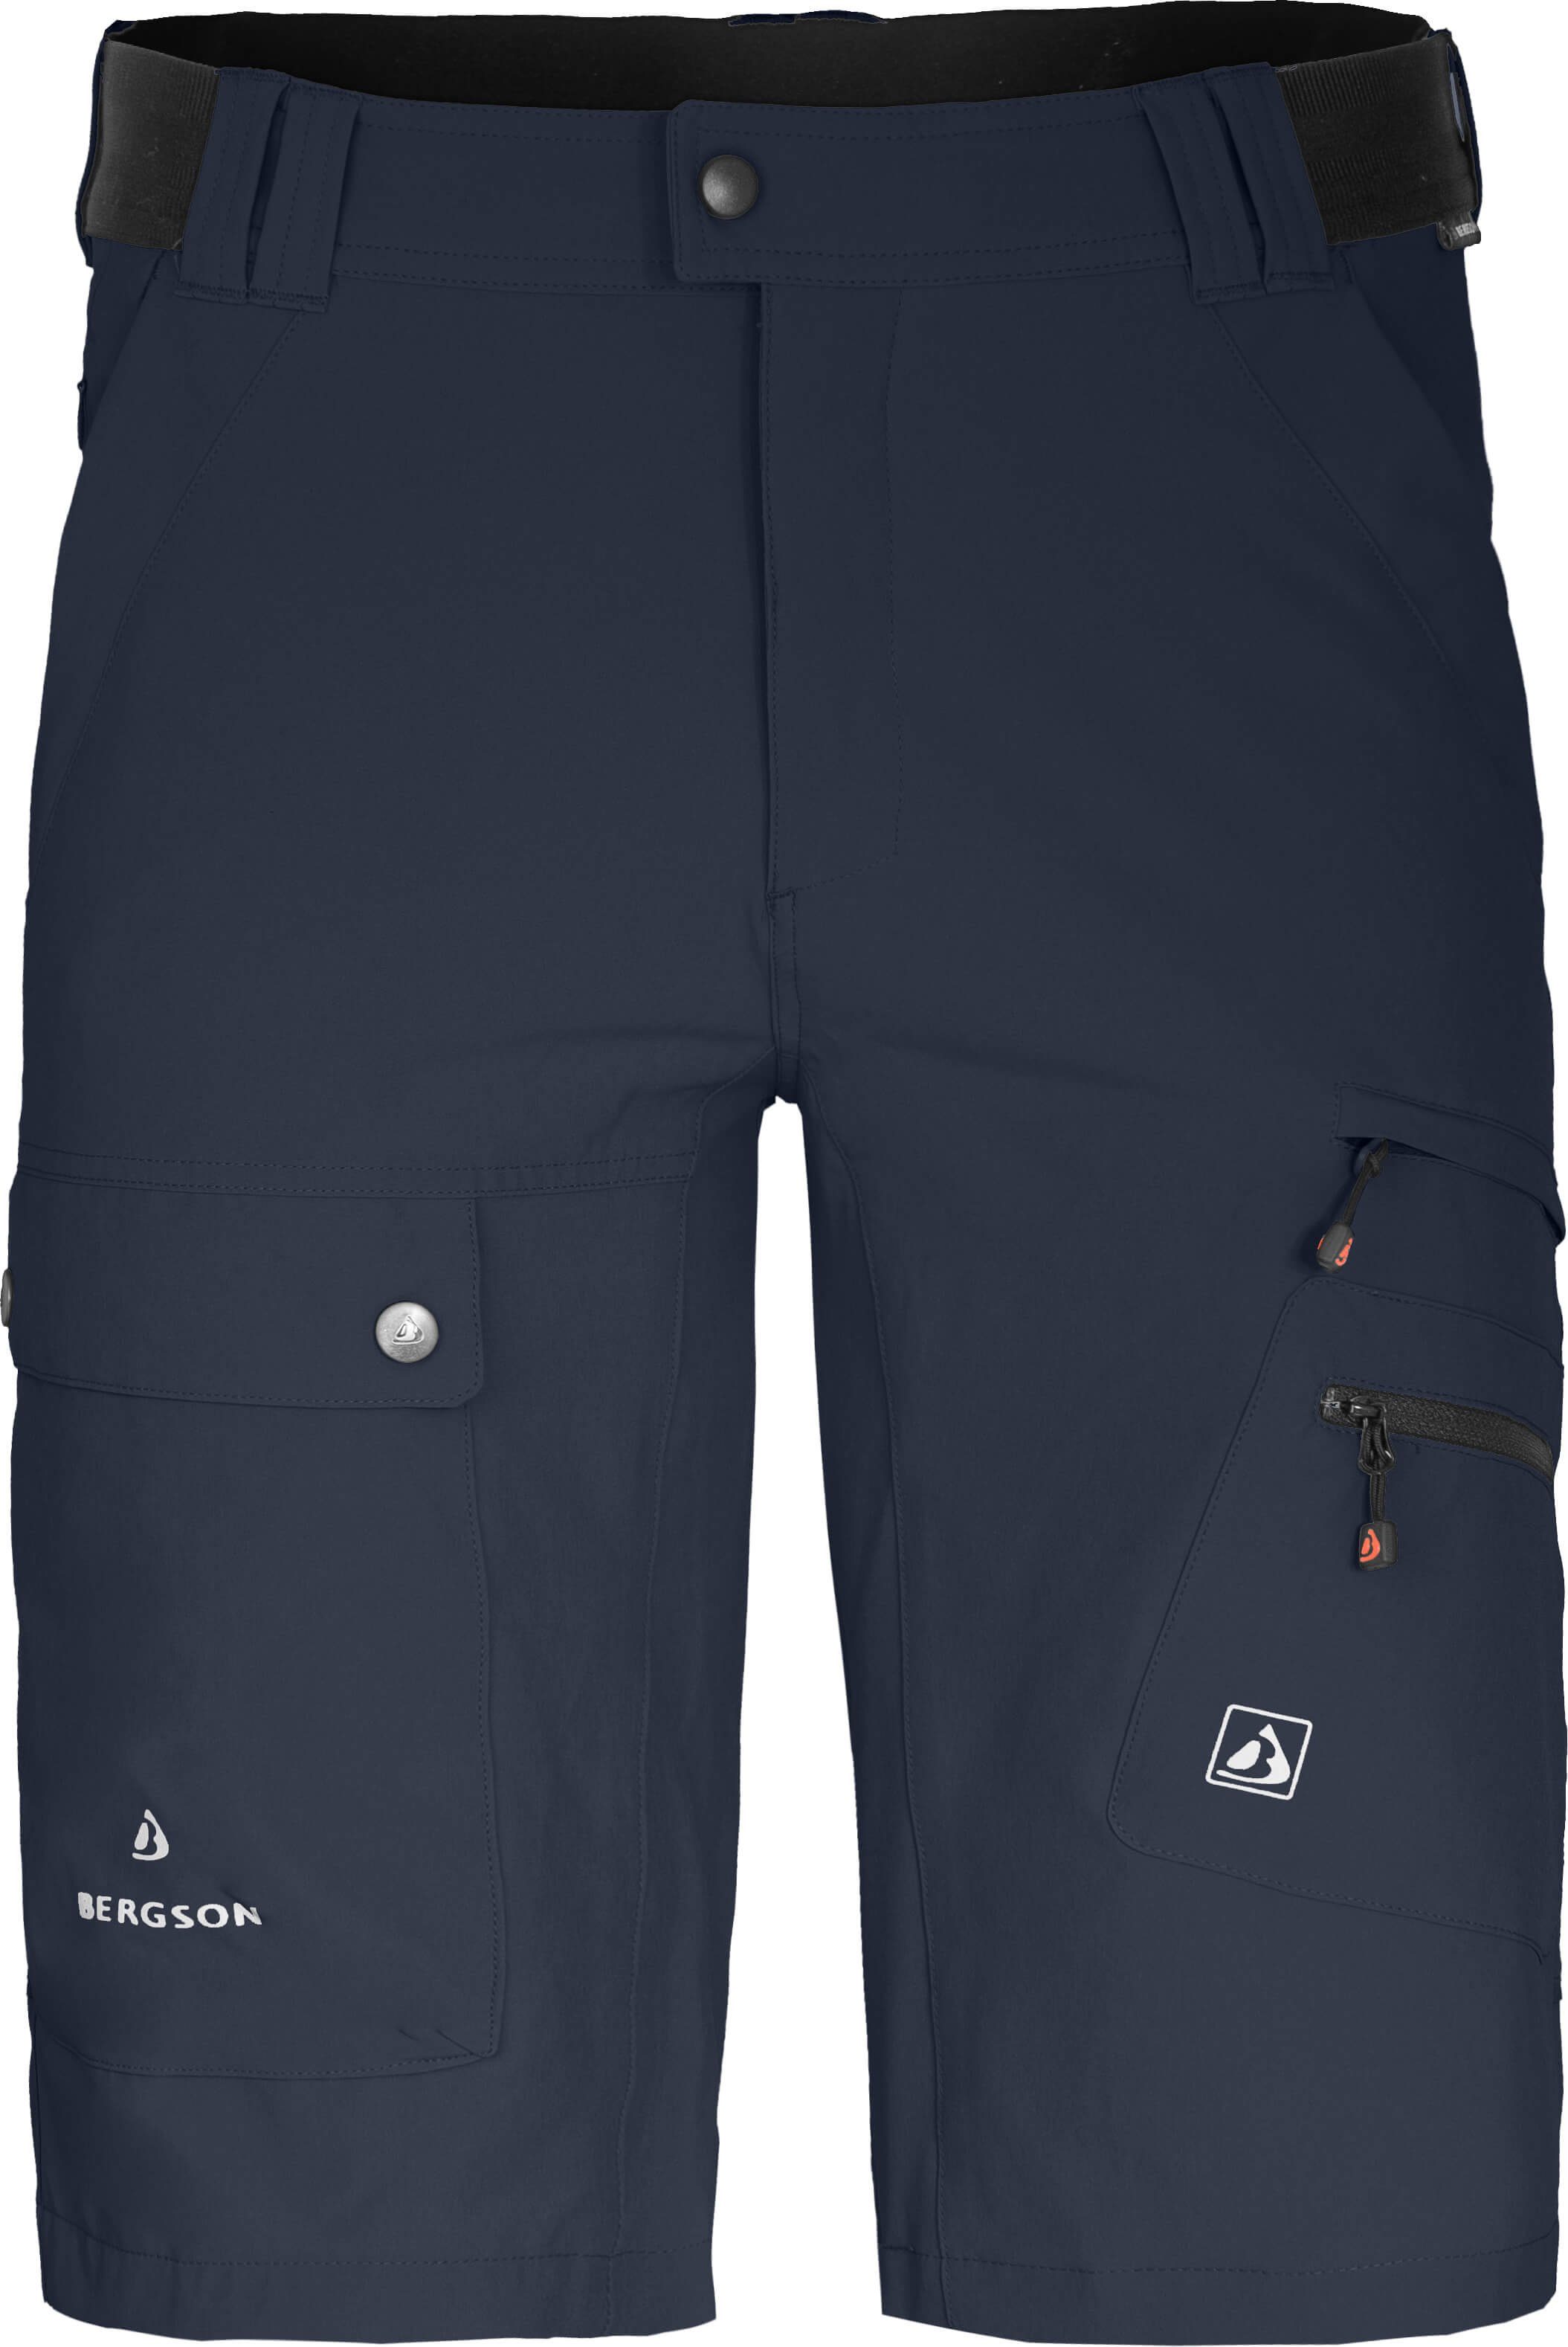 Bergson Outdoorhose FROSLEV Bermuda Herren Wandershorts, recycelt, elastisch, 8 Taschen, Normalgrößen navy blau